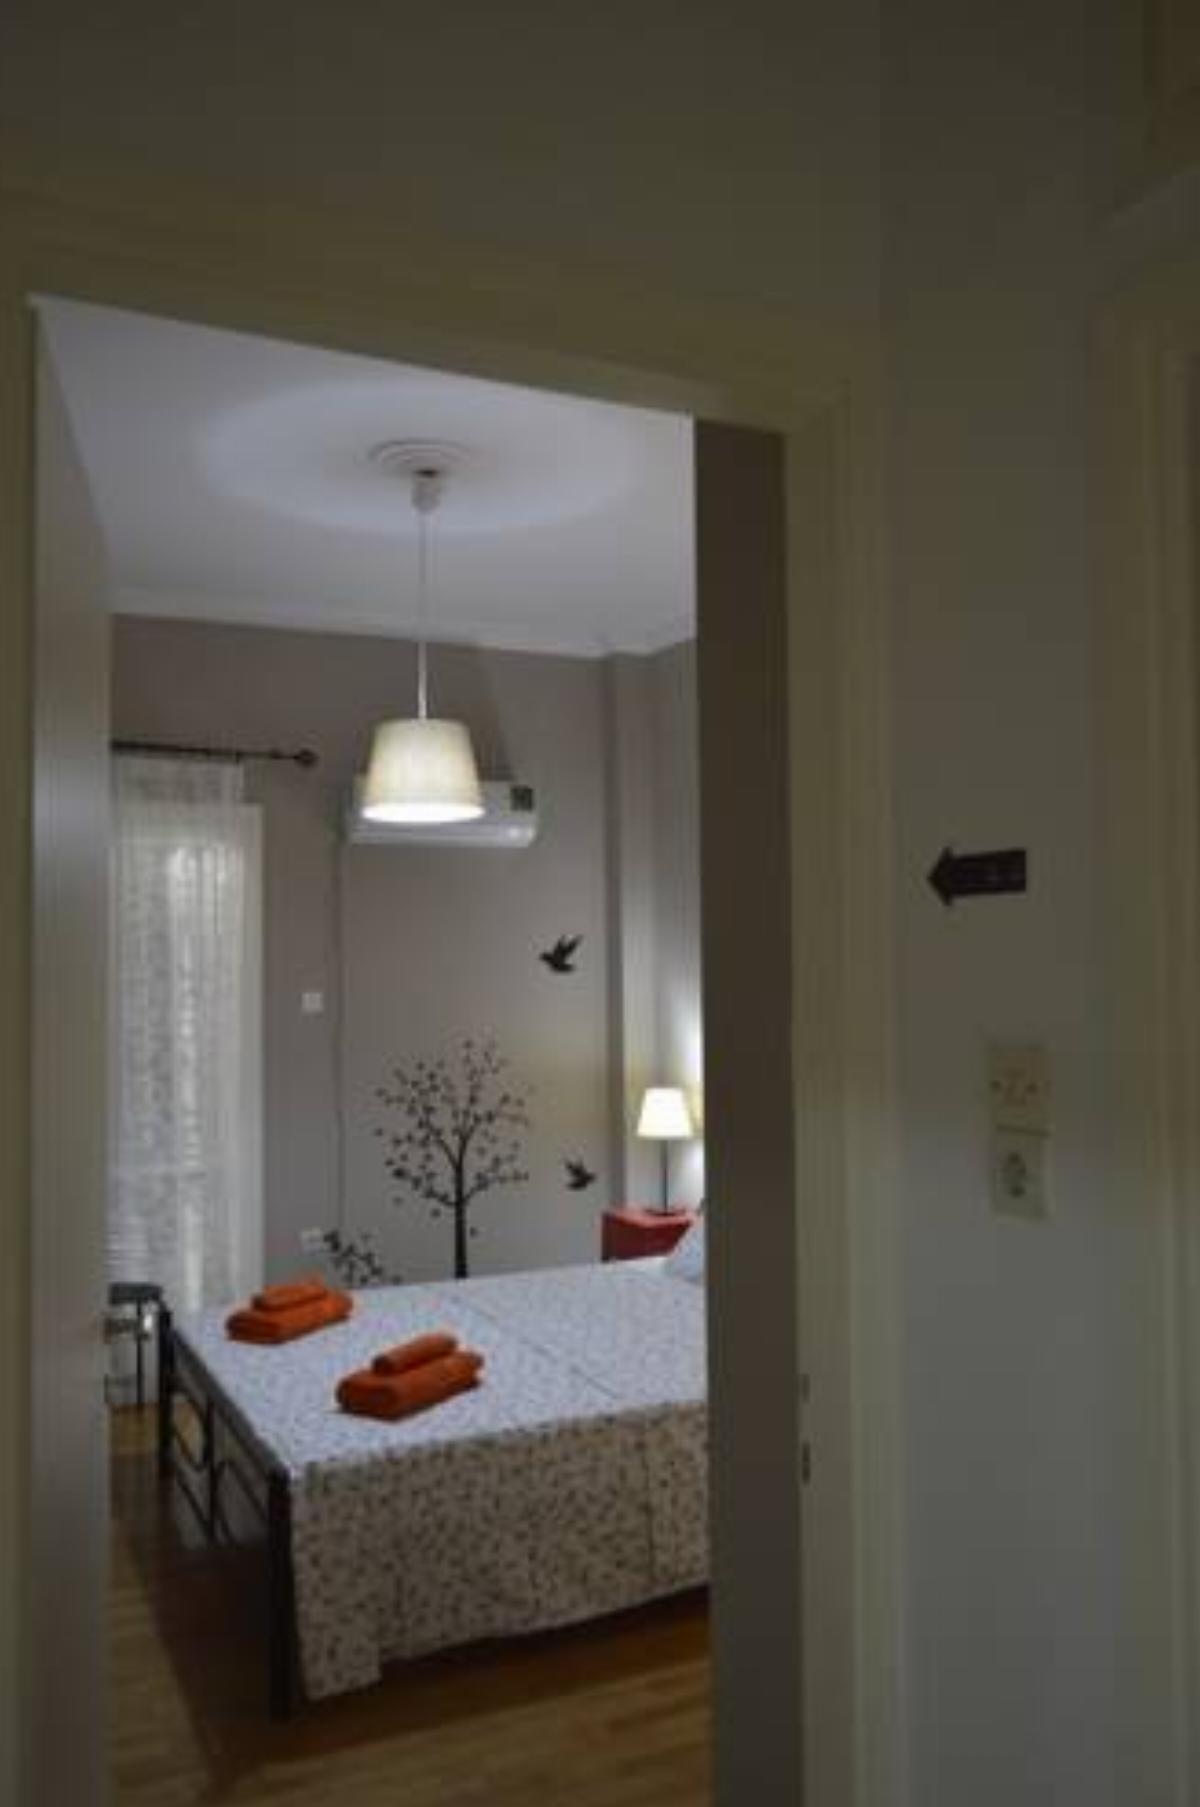 Attiki 3-room apartment Hotel Athens Greece